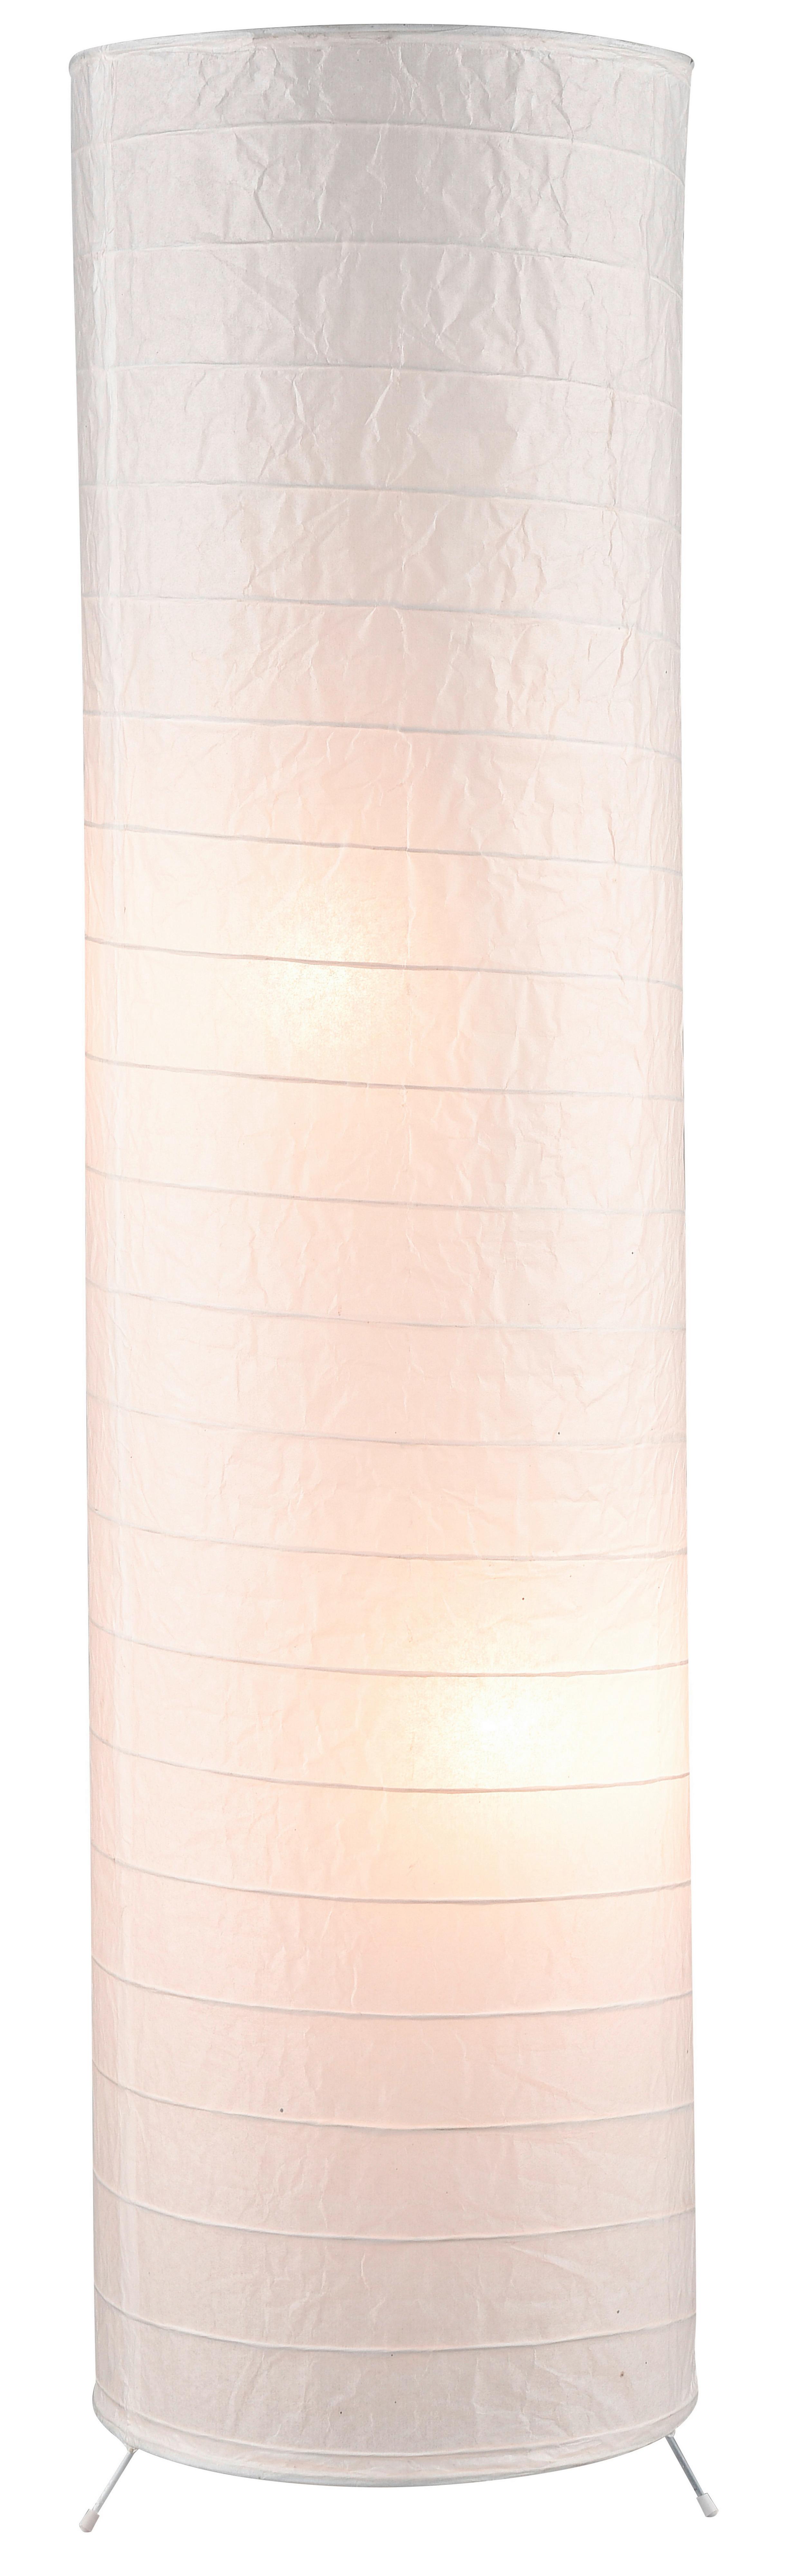 Stehlampe Julia mit Weißem Papierschirm, Zylinderform - Weiß, KONVENTIONELL, Papier/Metall (28/120cm) - Homezone